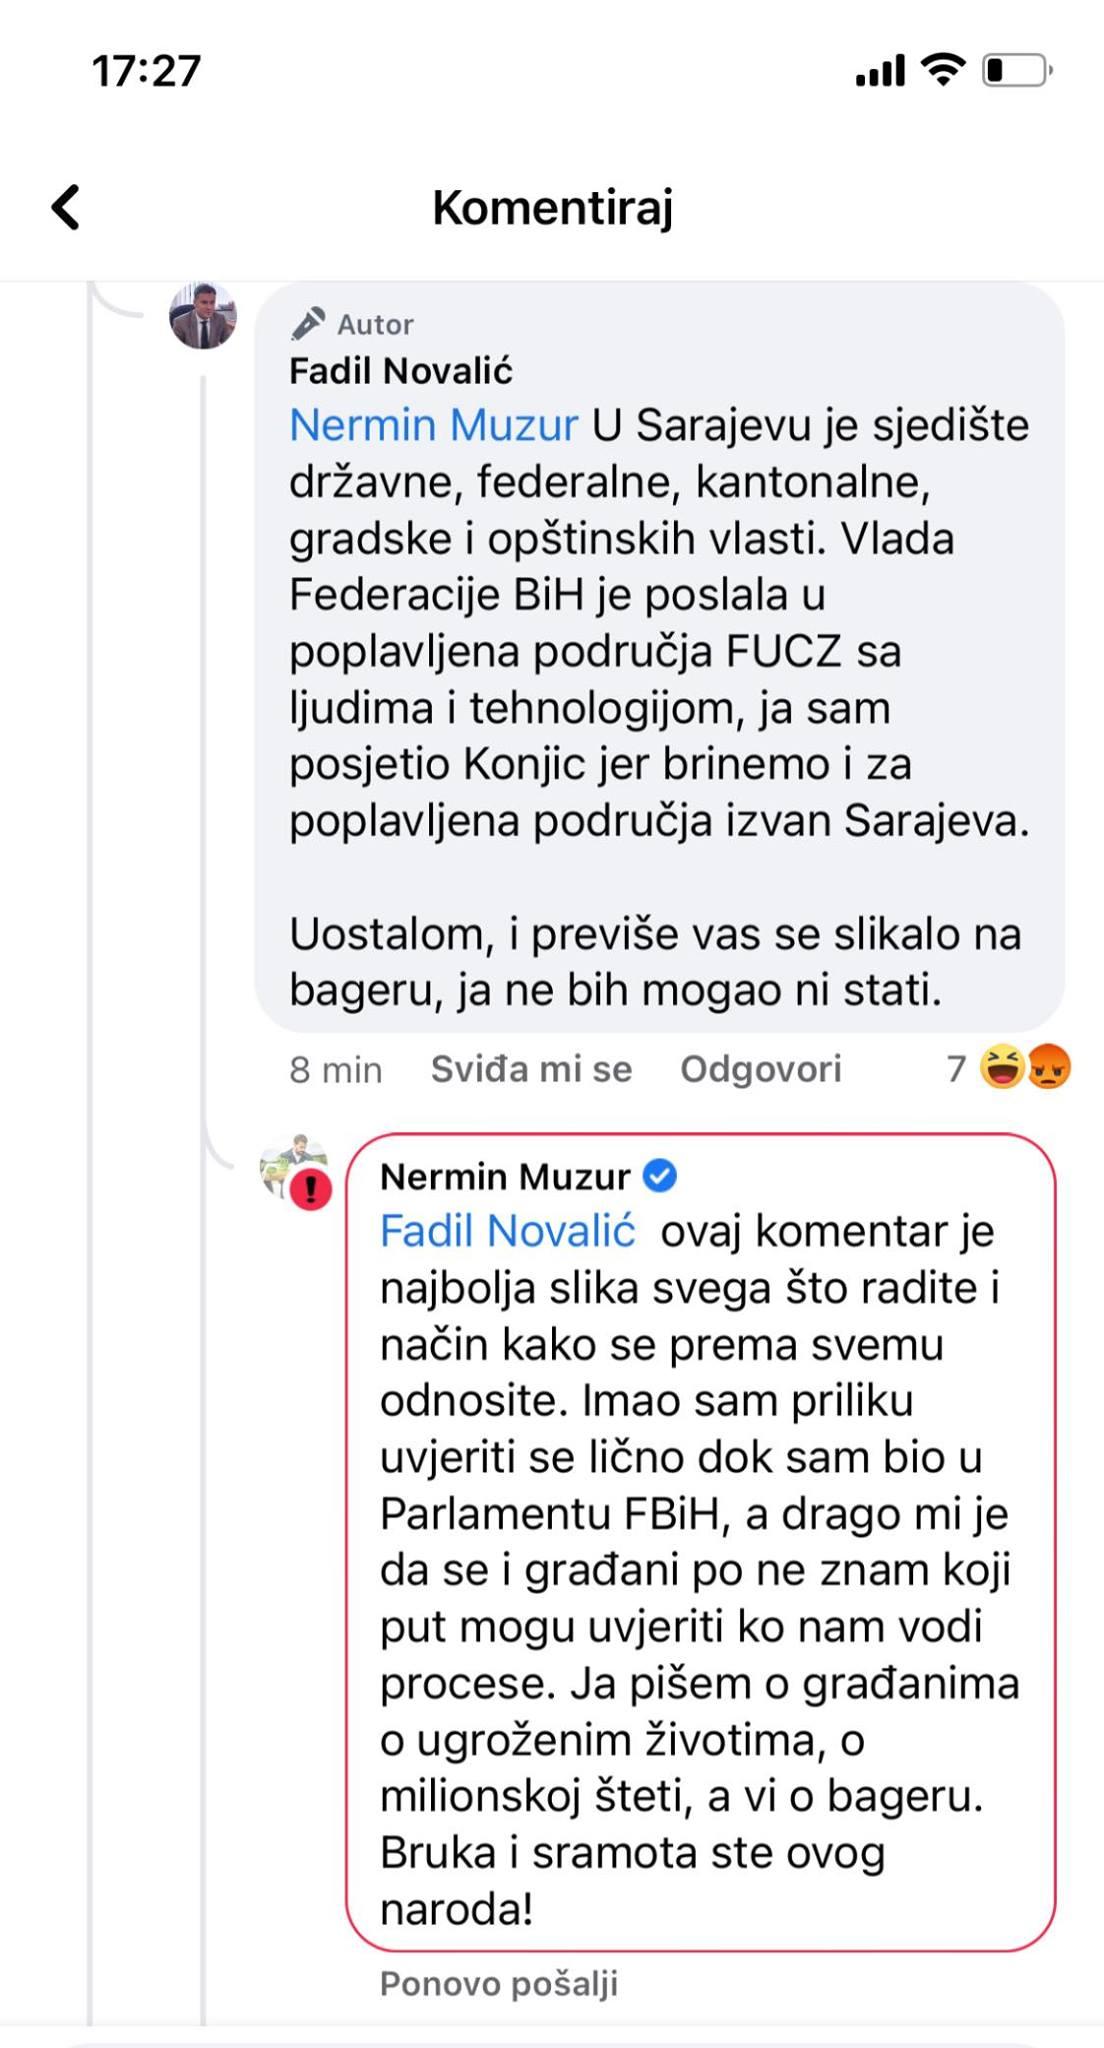 Odgovor premijera FBiH Novalića, te komentar načelnika općine Ilidža Muzura u kojem se vidi da je blokiran - Avaz